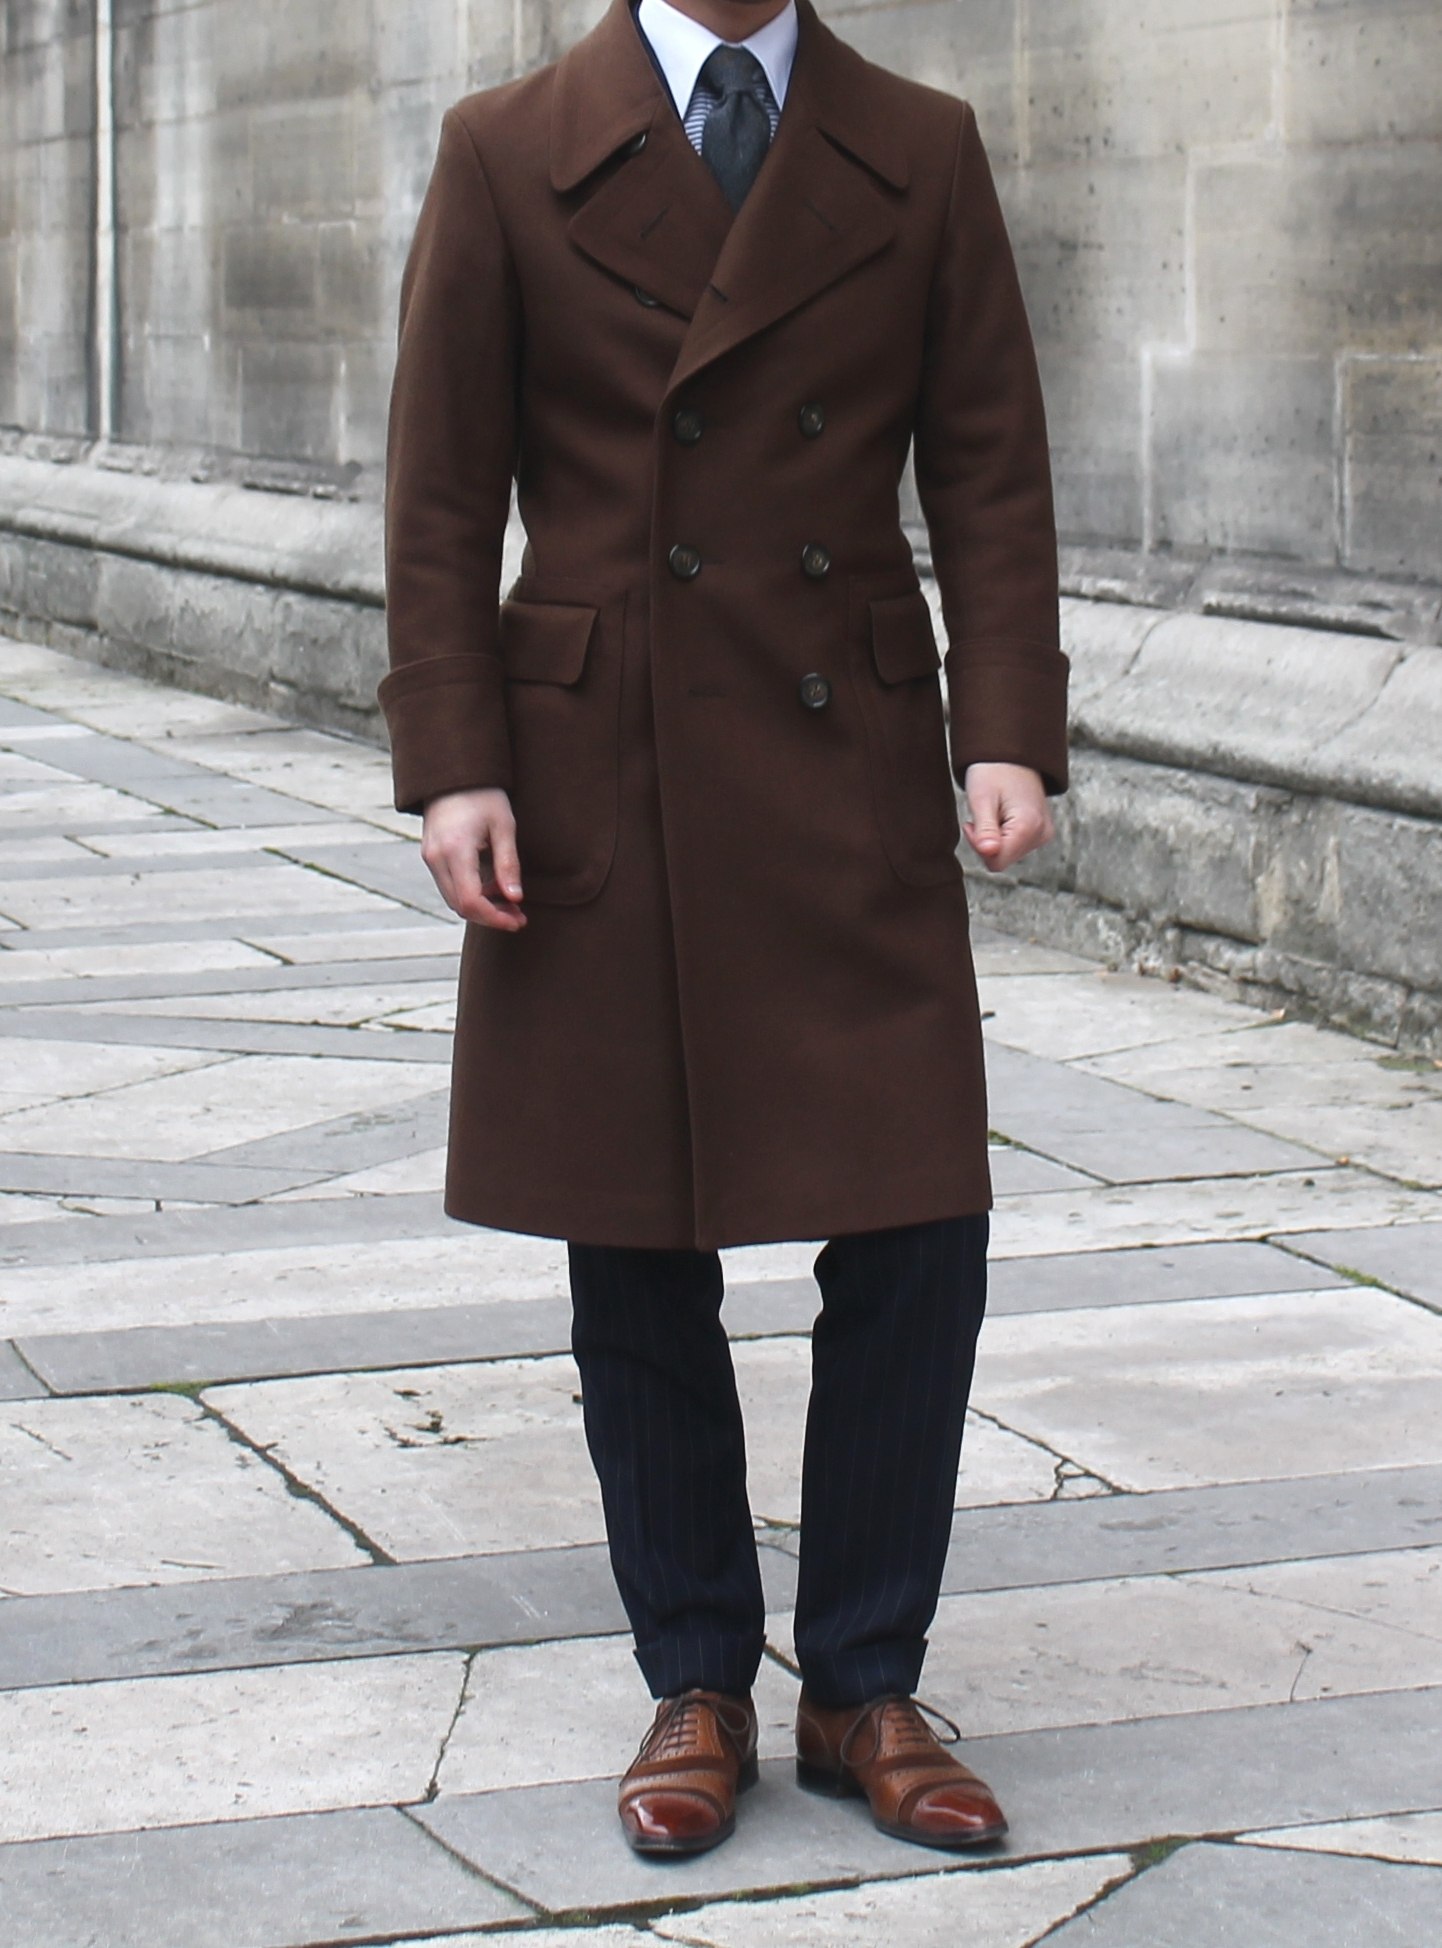 Темное пальто мужское. Кор чневое мужское пвльто. Коричневое пальто мужское. Классическое пальто мужское. Темно коричневое пальто мужское.